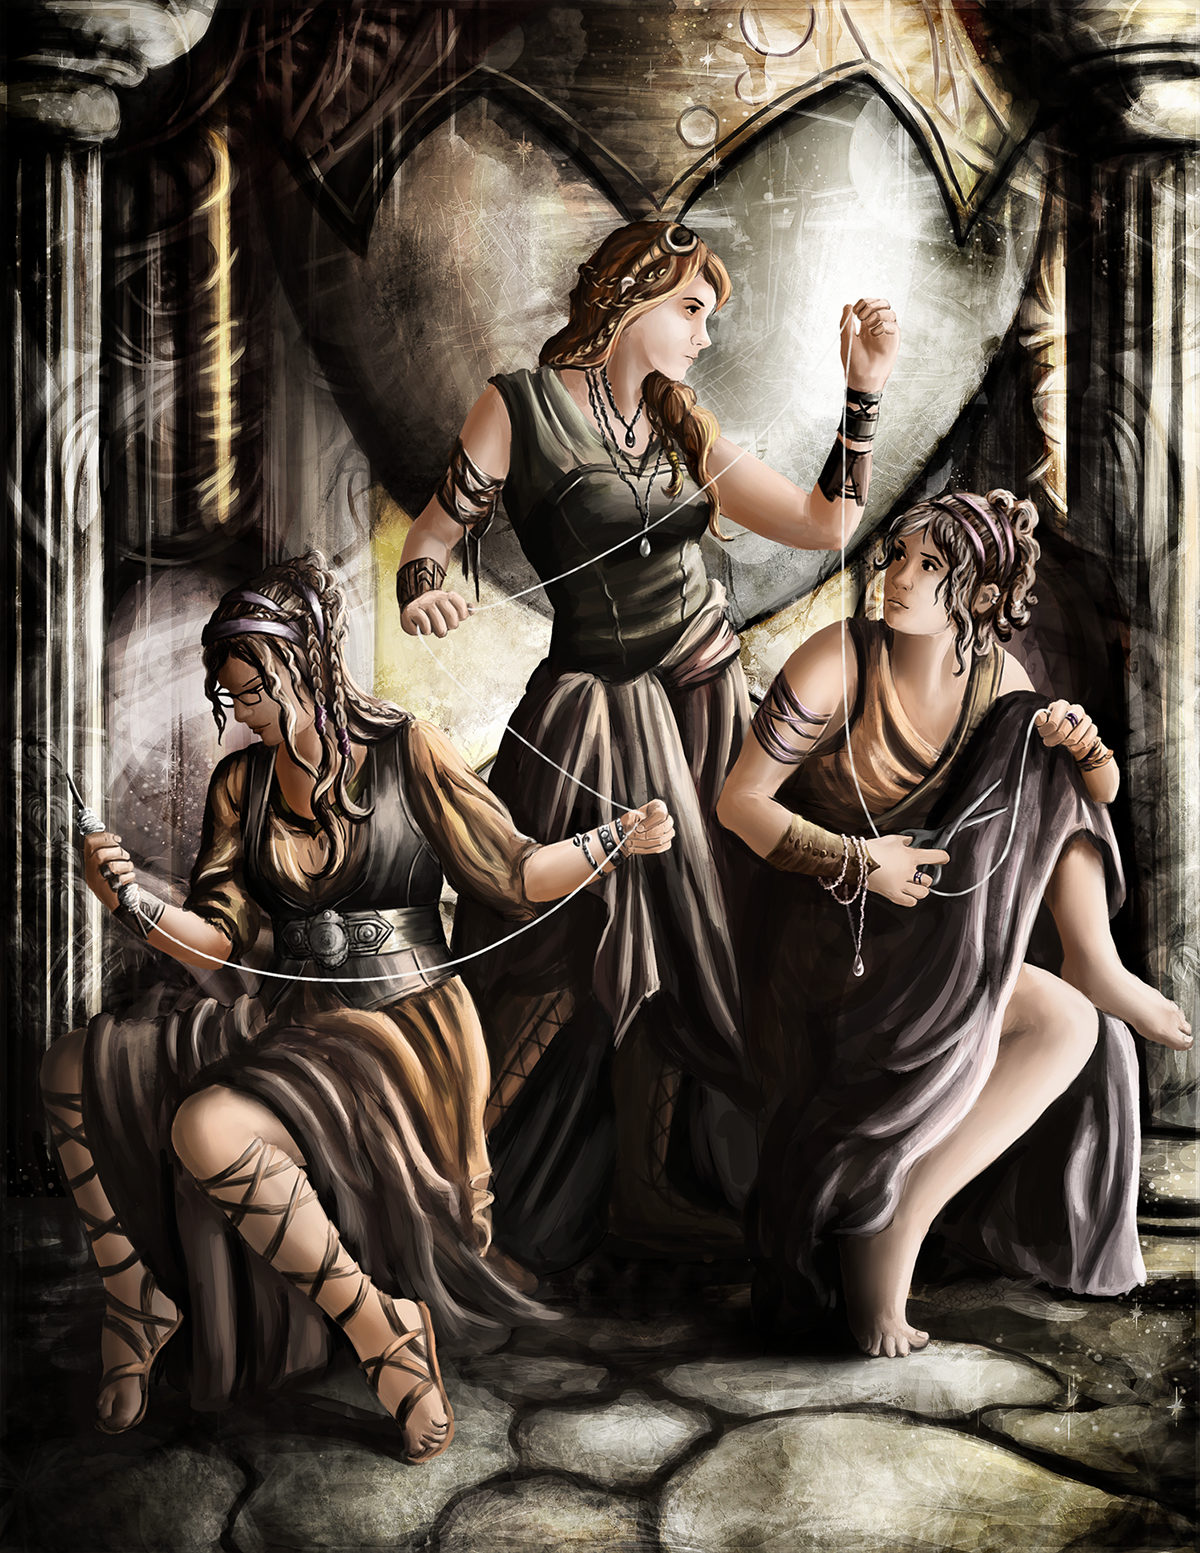 Судьба в древнегреческой мифологии